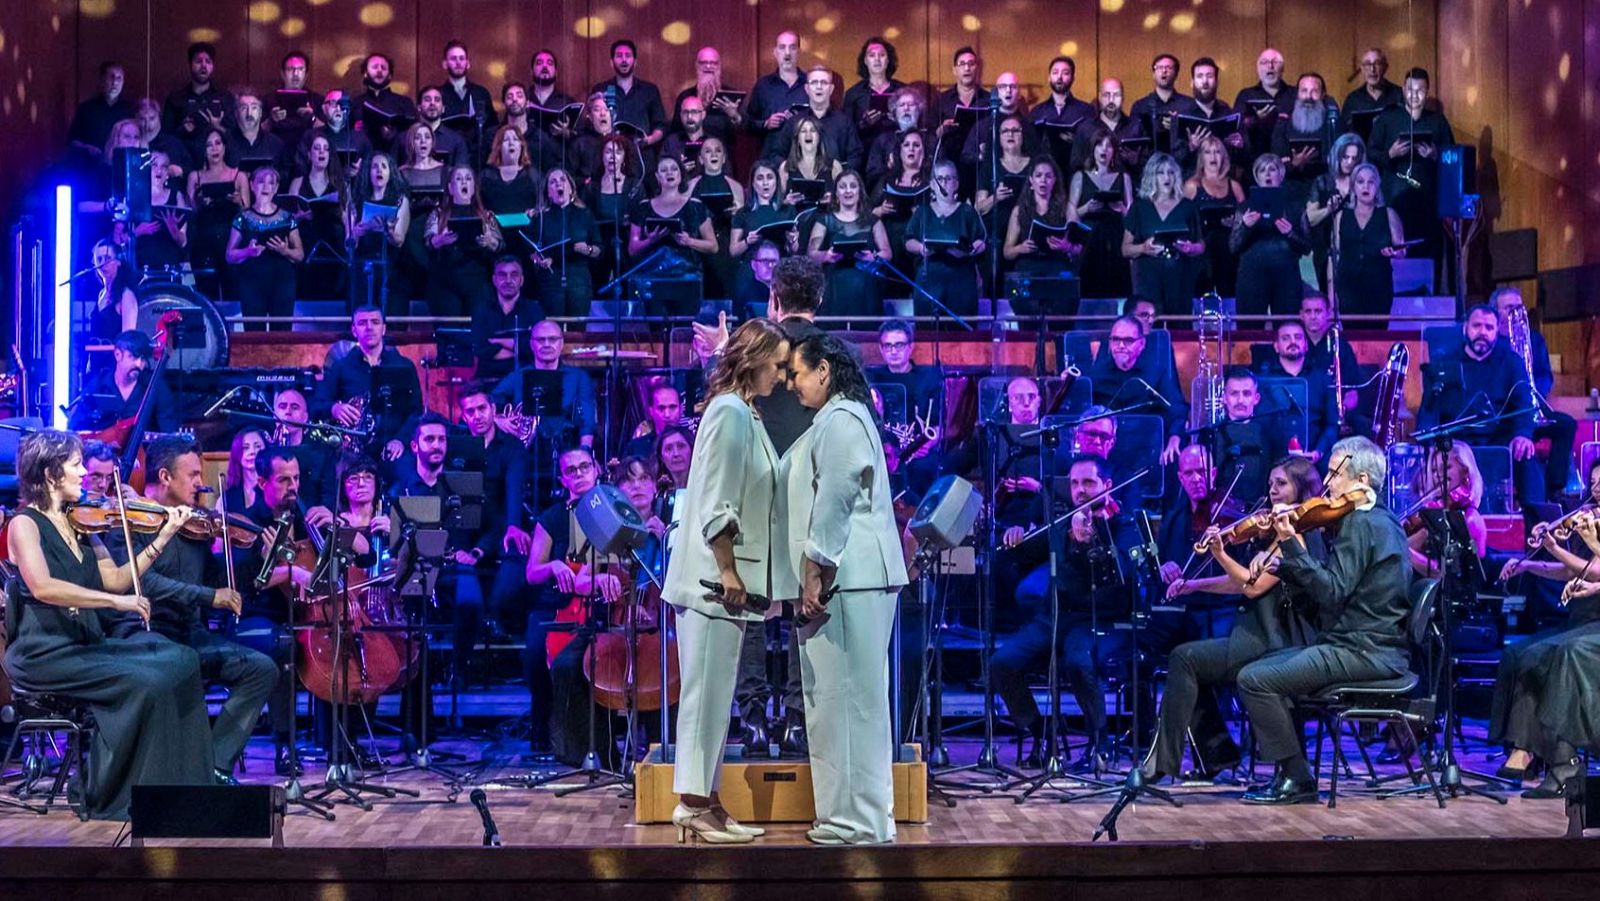 Carolina y María del Mar cantan "Mujer contra mujer" en el concierto 'Lo que soy'